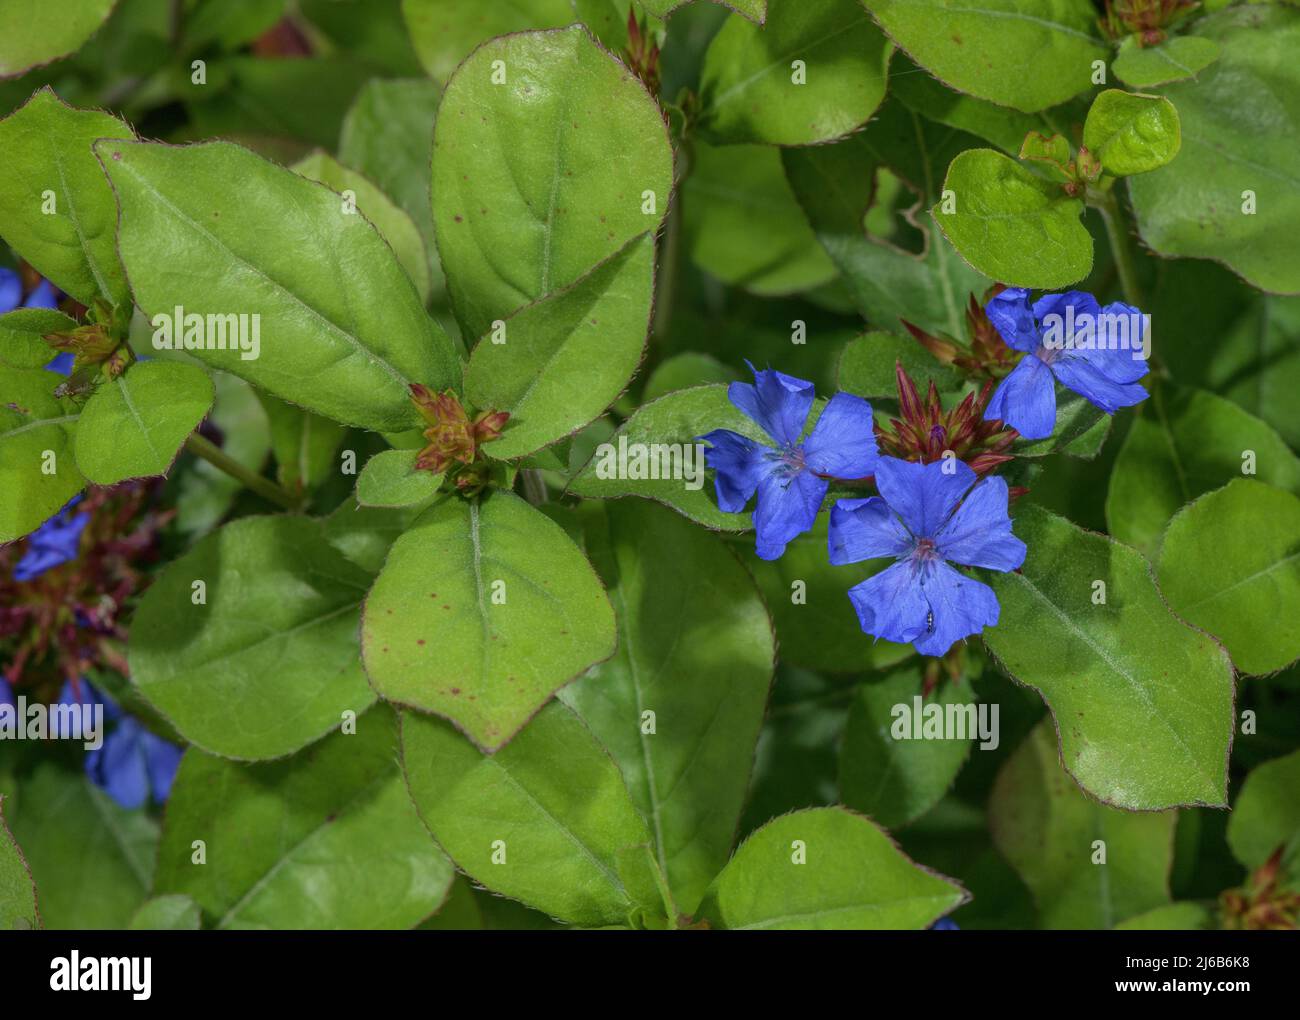 Guadwort de flor azul, Ceratostigma plumbaginoides, en flor en el borde del jardín. Foto de stock